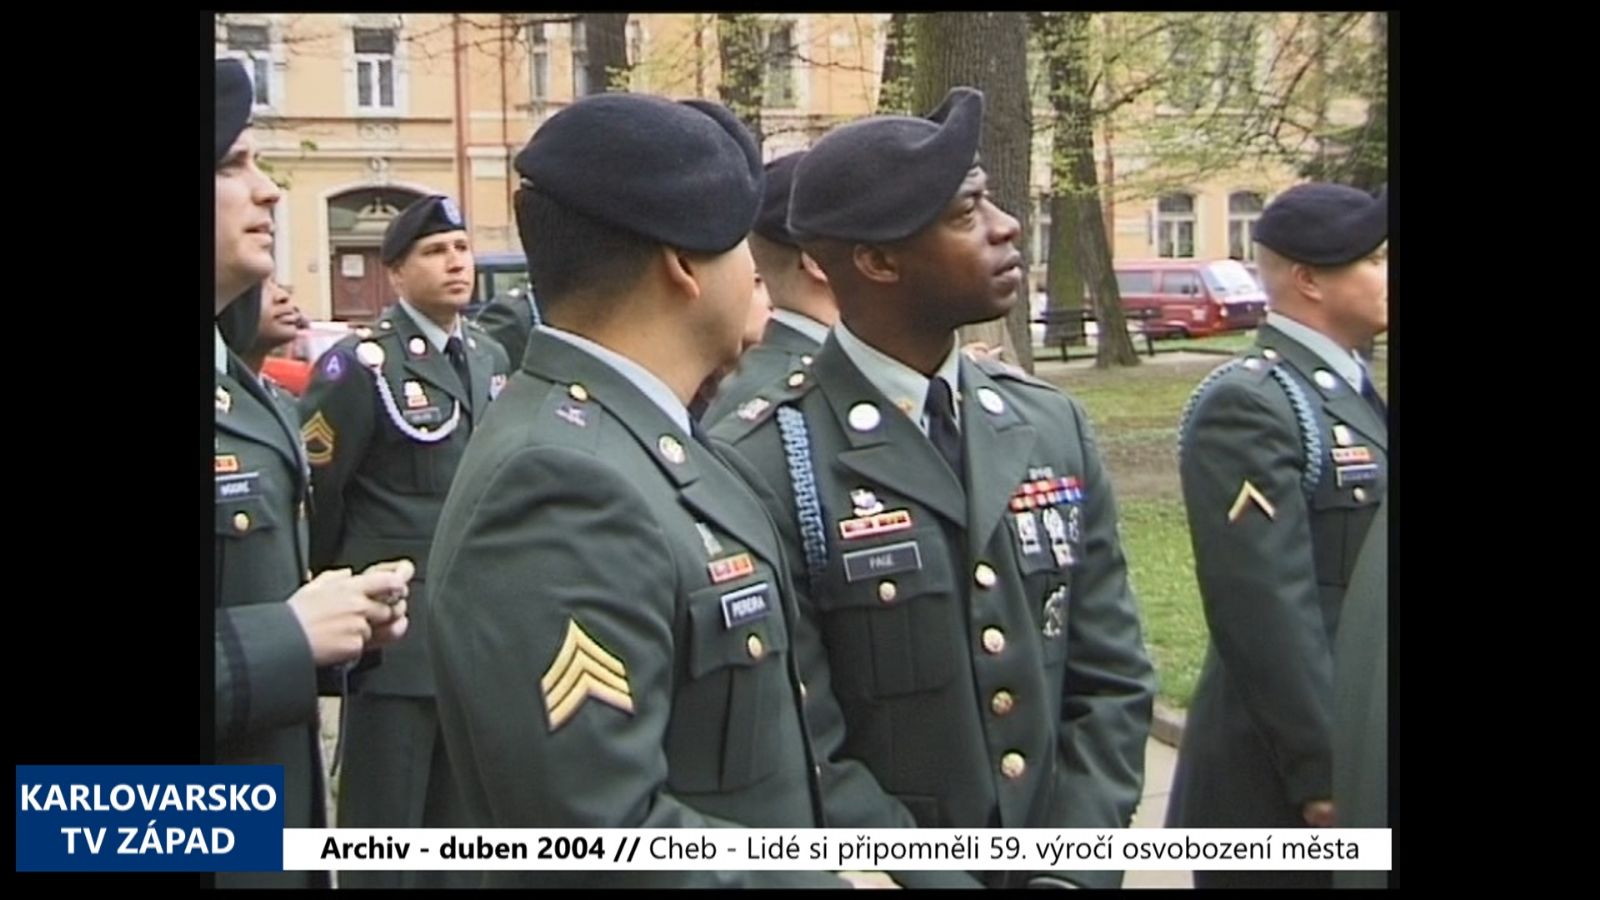 2004 – Cheb: Lidé si připomněli 59. výročí osvobození města (TV Západ)